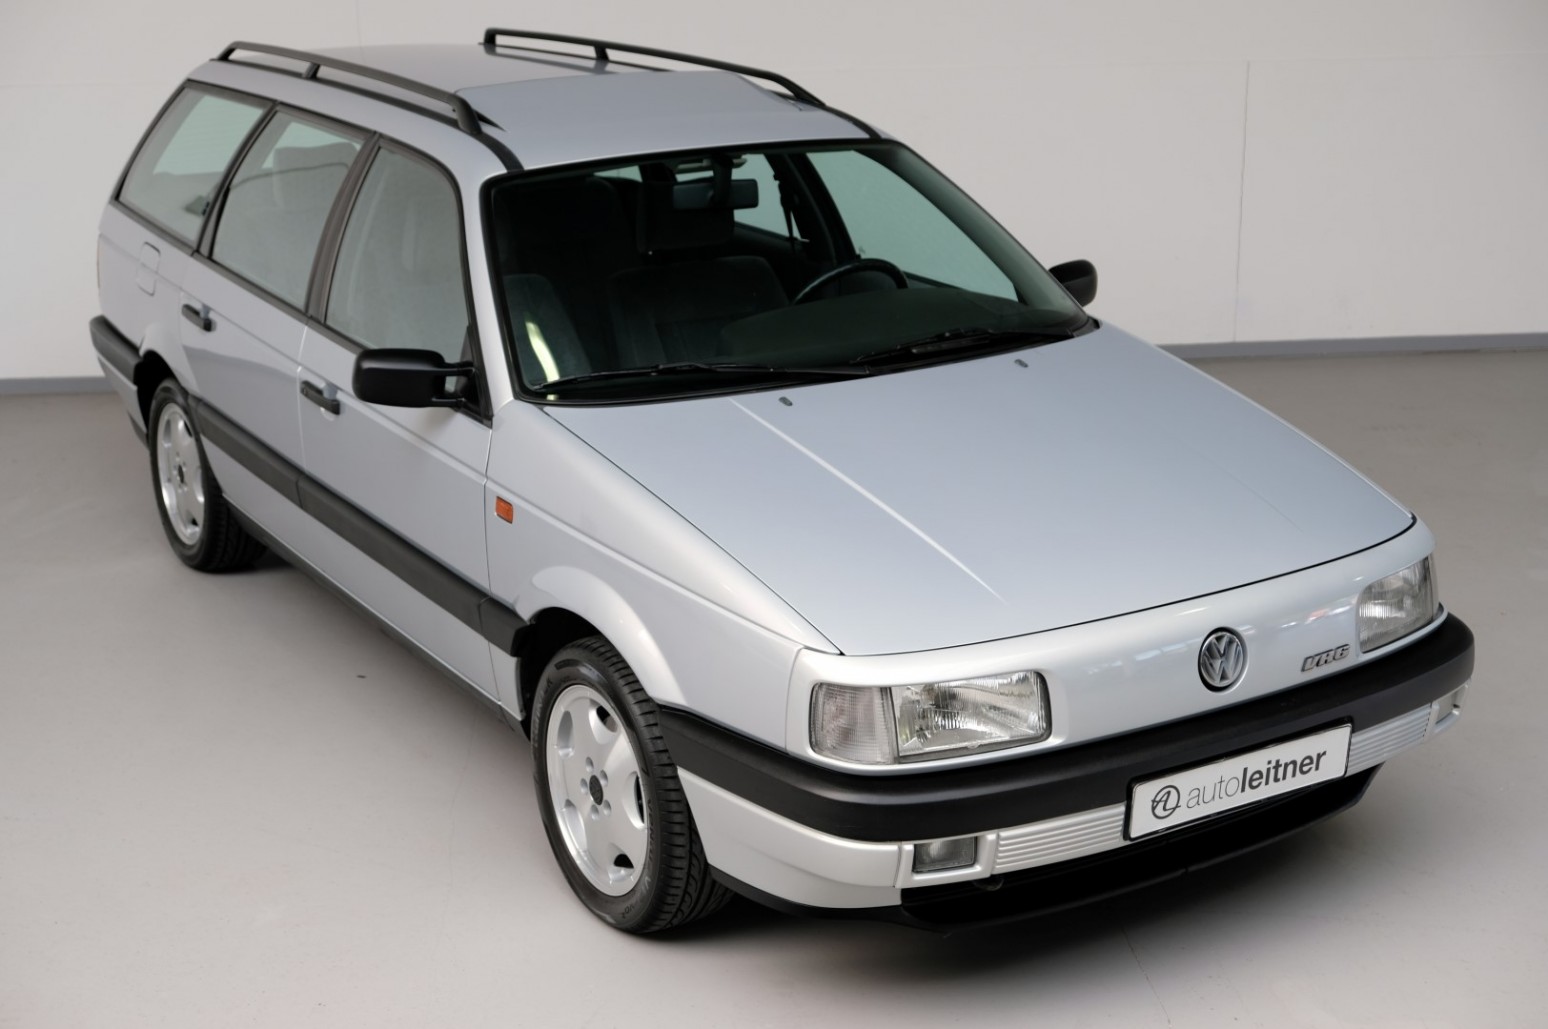 Volkswagen Passat Variant 2.8 VR6, el discreto familiar deportivo que podrías “estrenar”